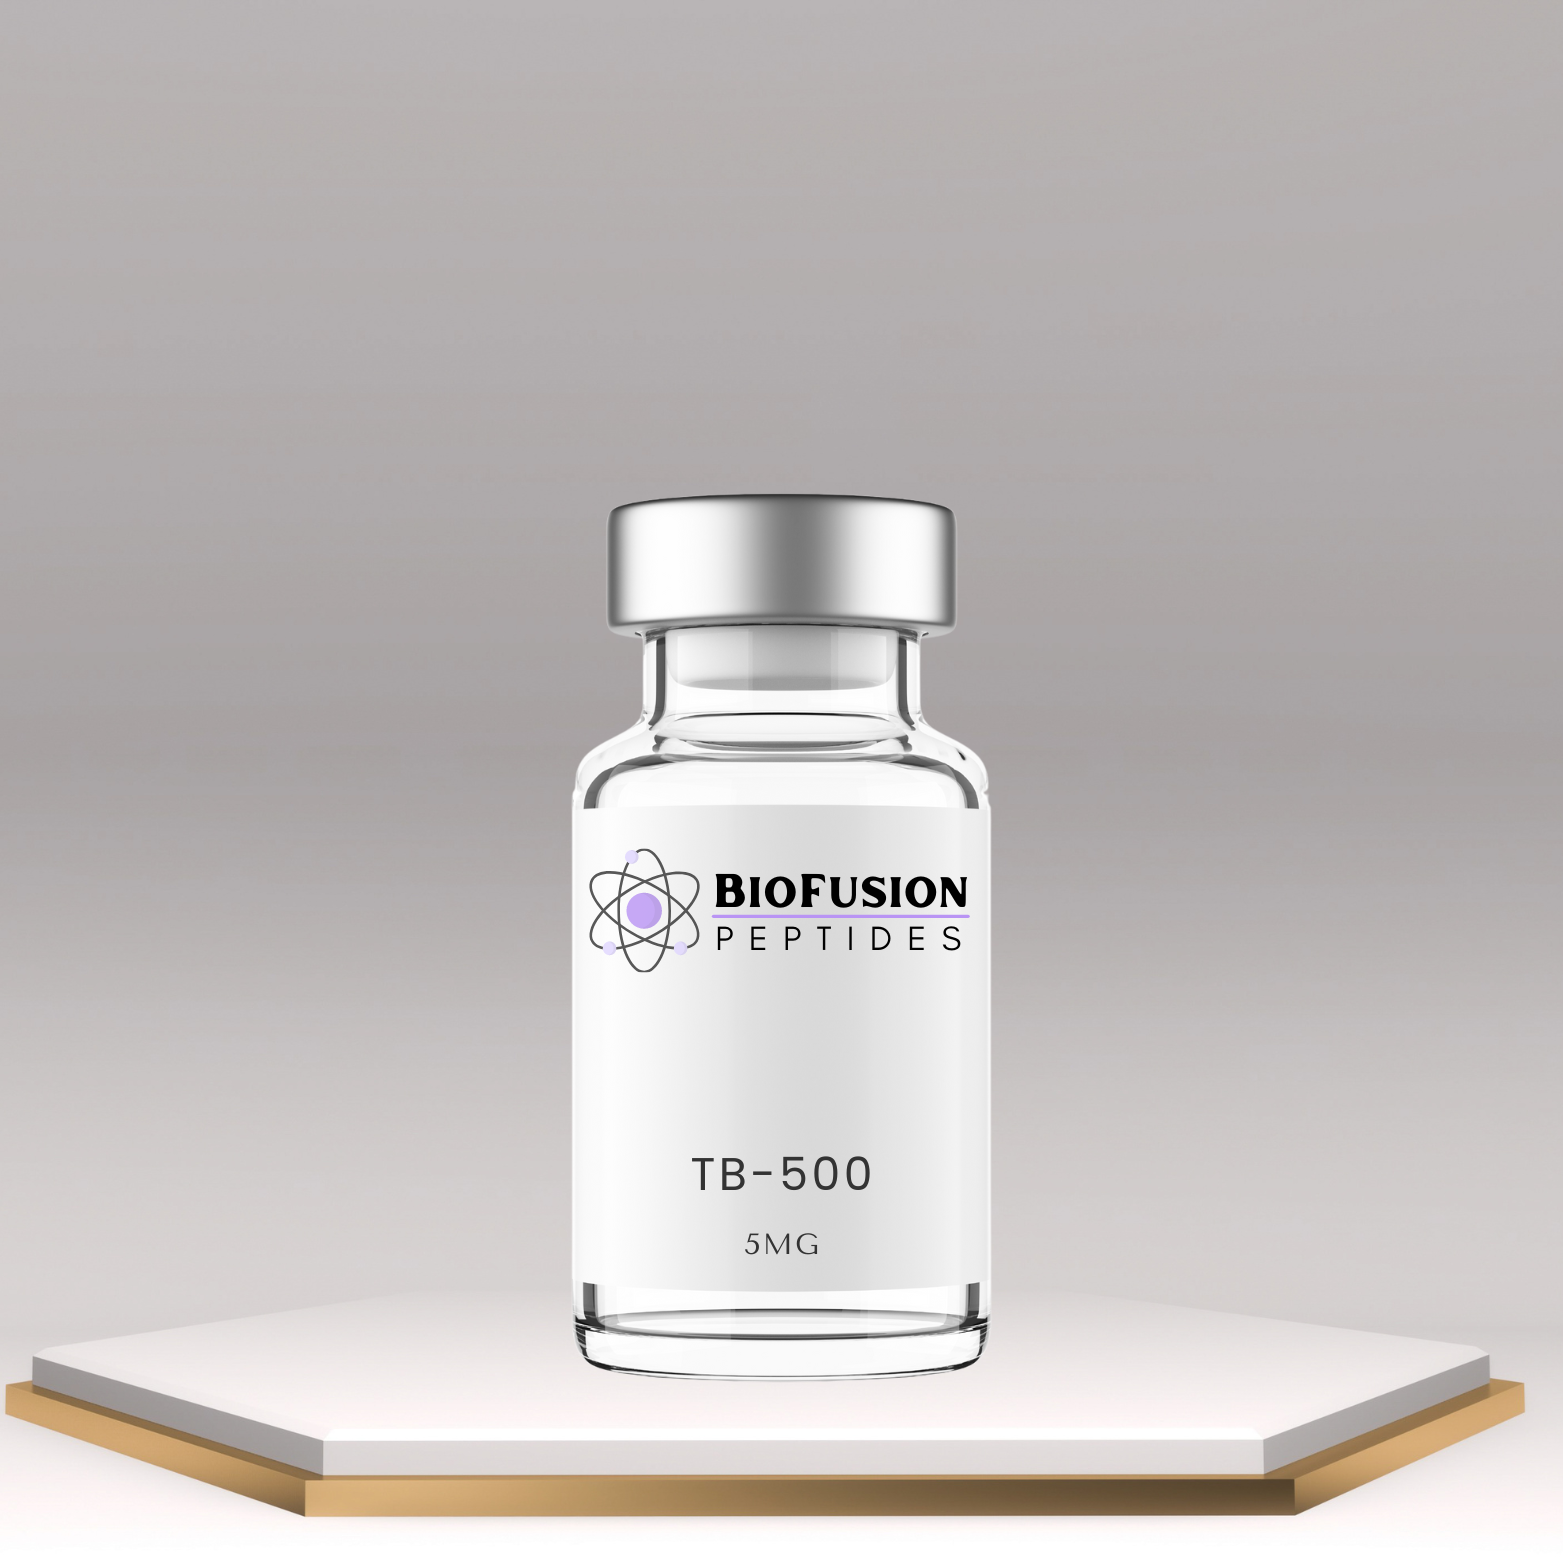 BioFusion Peptides TB-500 (5MG) vial